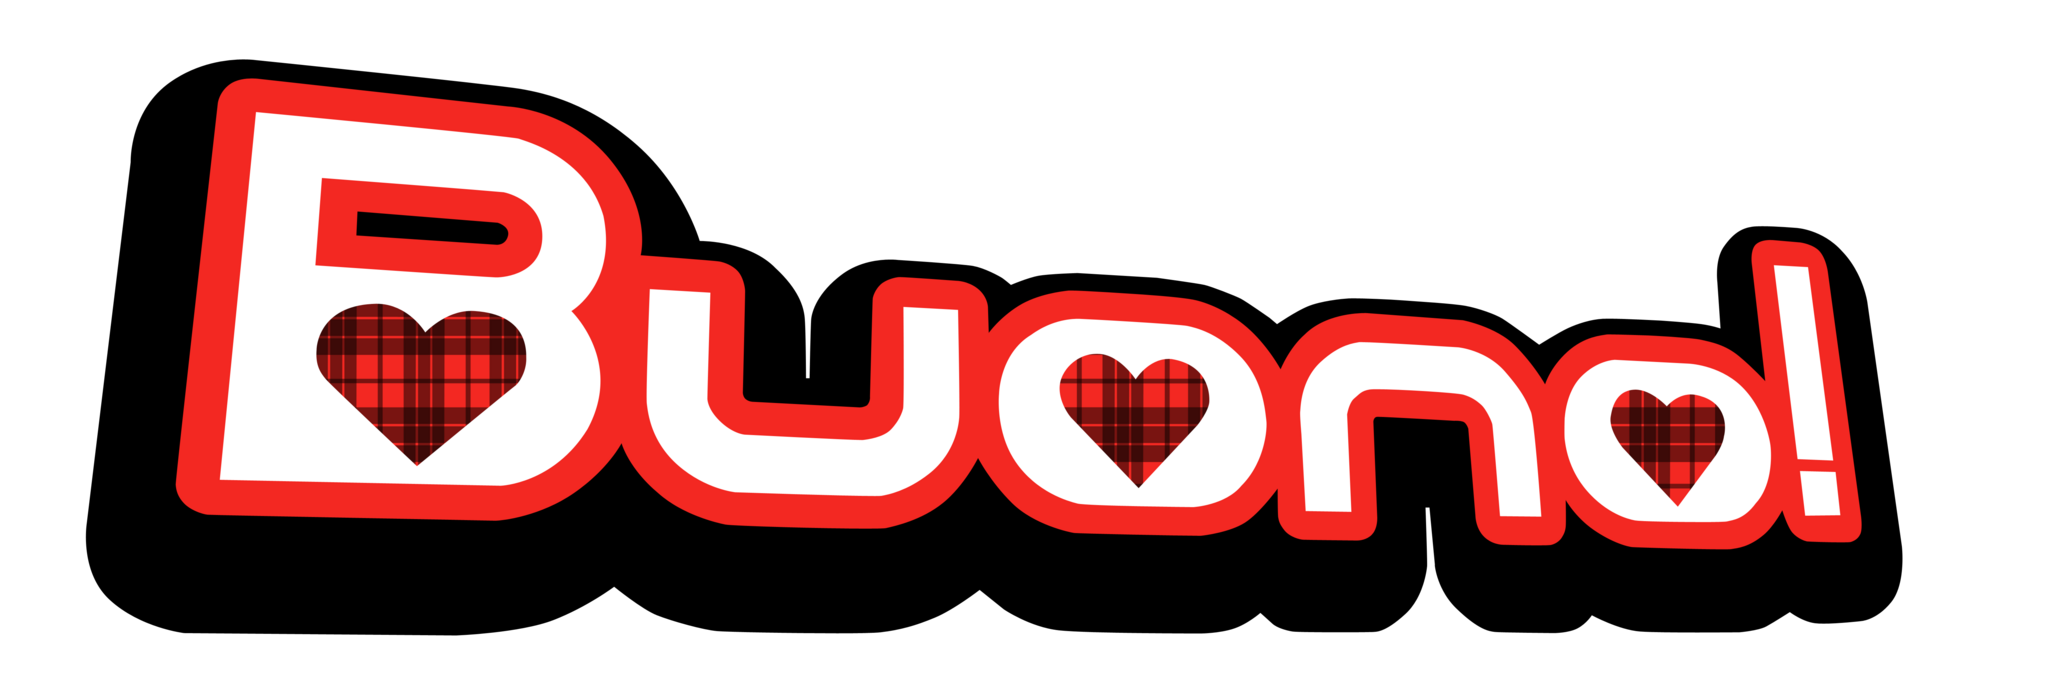 Buono Logo